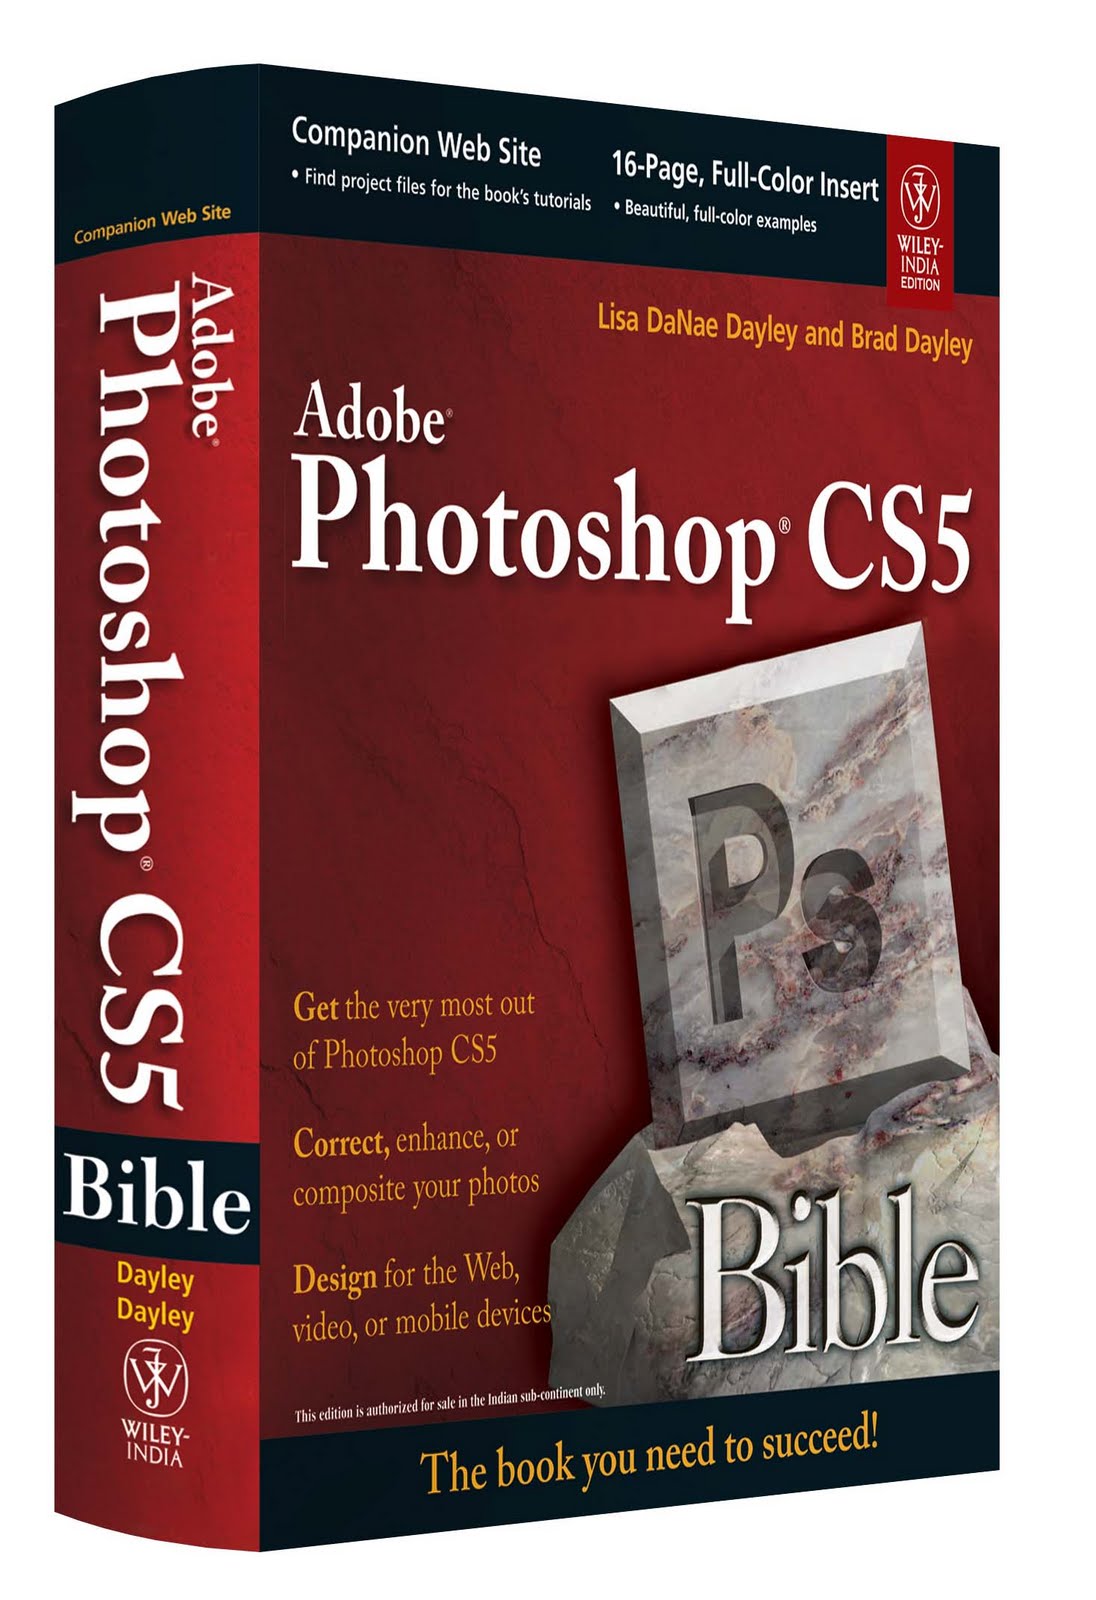 adobe photoshop cs5 bible pdf free download